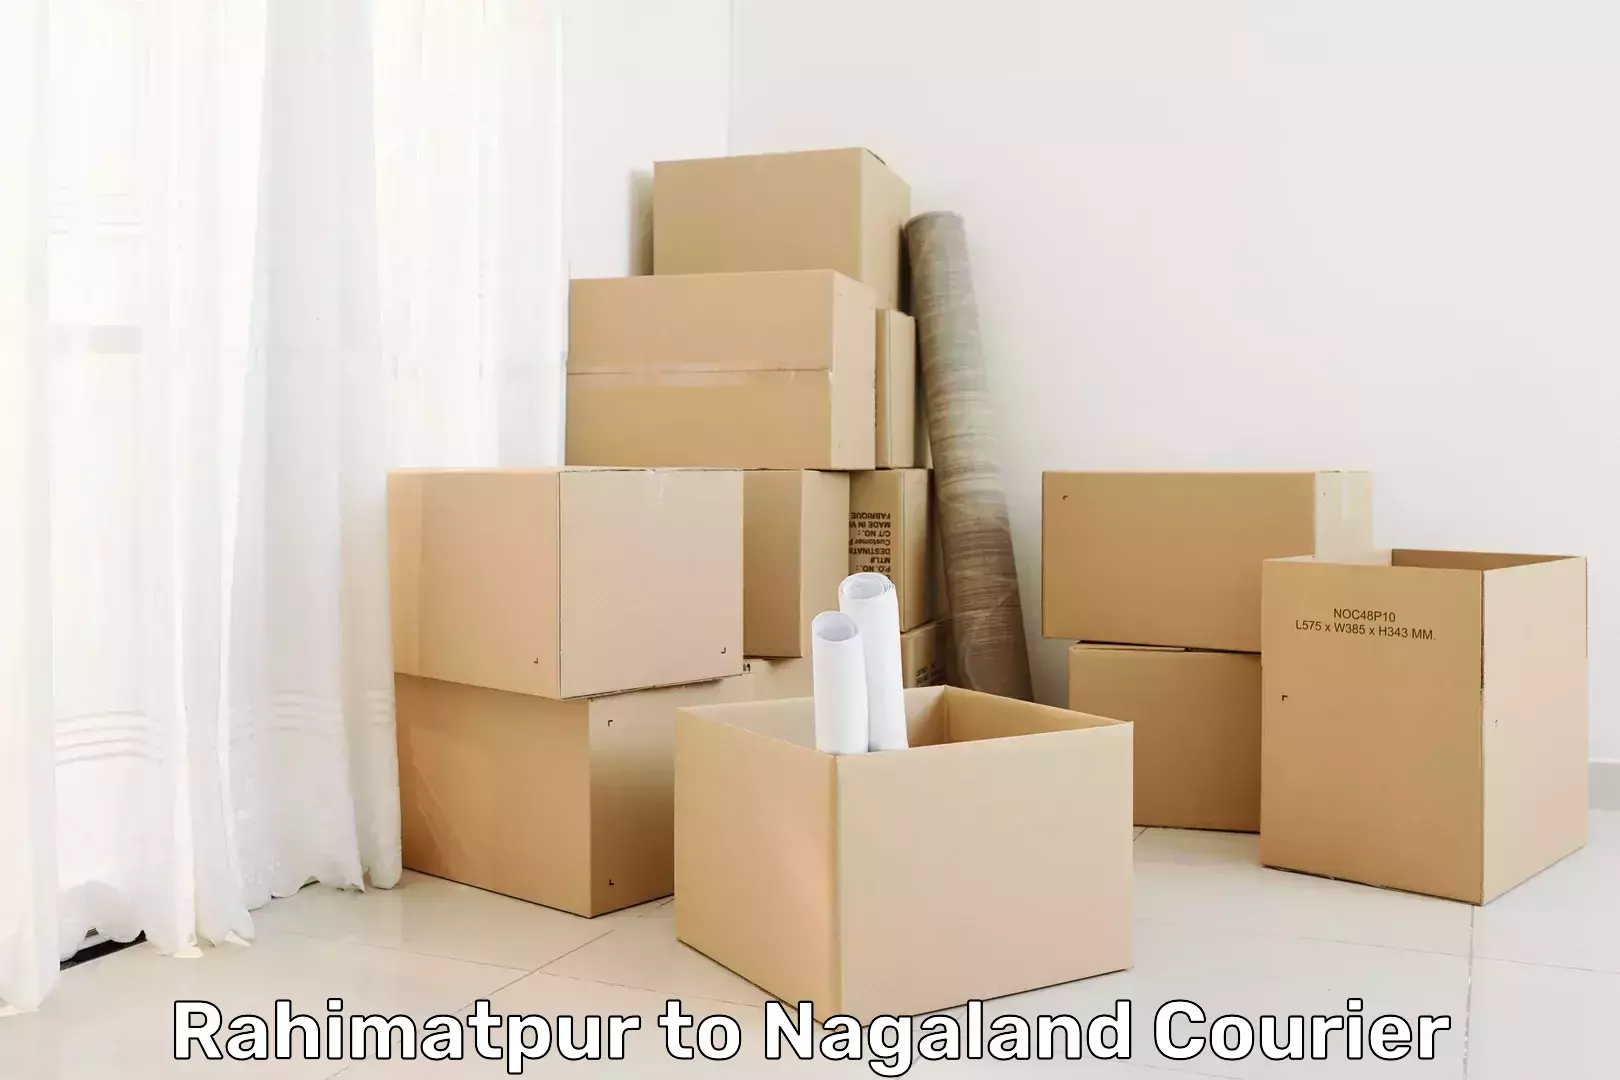 Express courier capabilities Rahimatpur to Nagaland